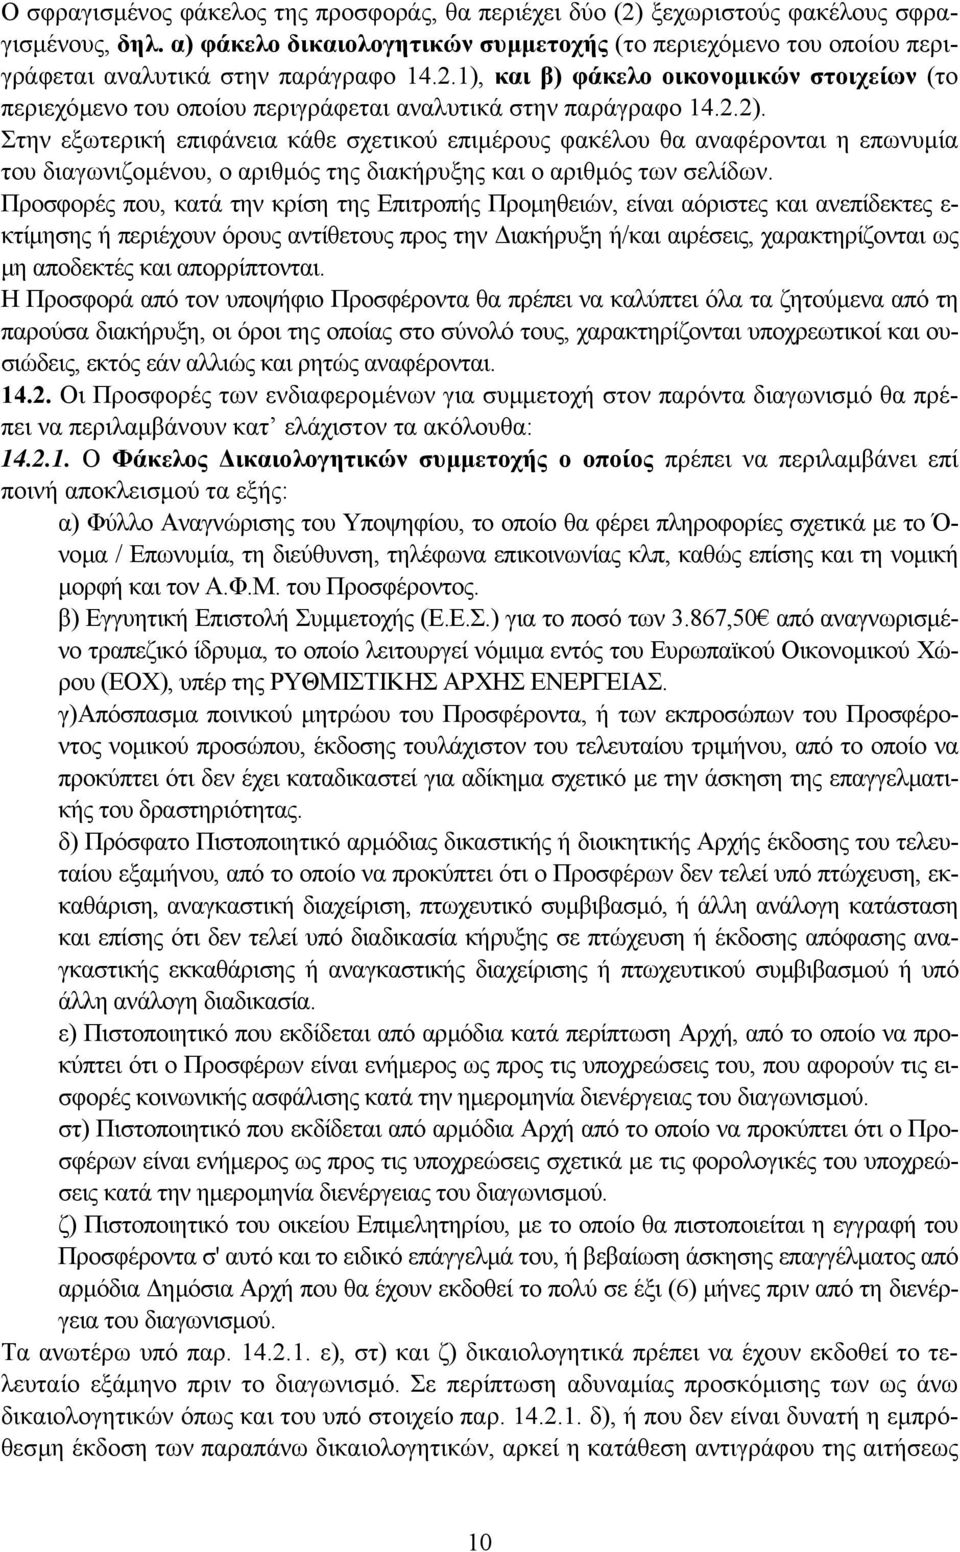 1), και β) φάκελο οικονοµικών στοιχείων (το περιεχόµενο του οποίου περιγράφεται αναλυτικά στην παράγραφο 14.2.2).